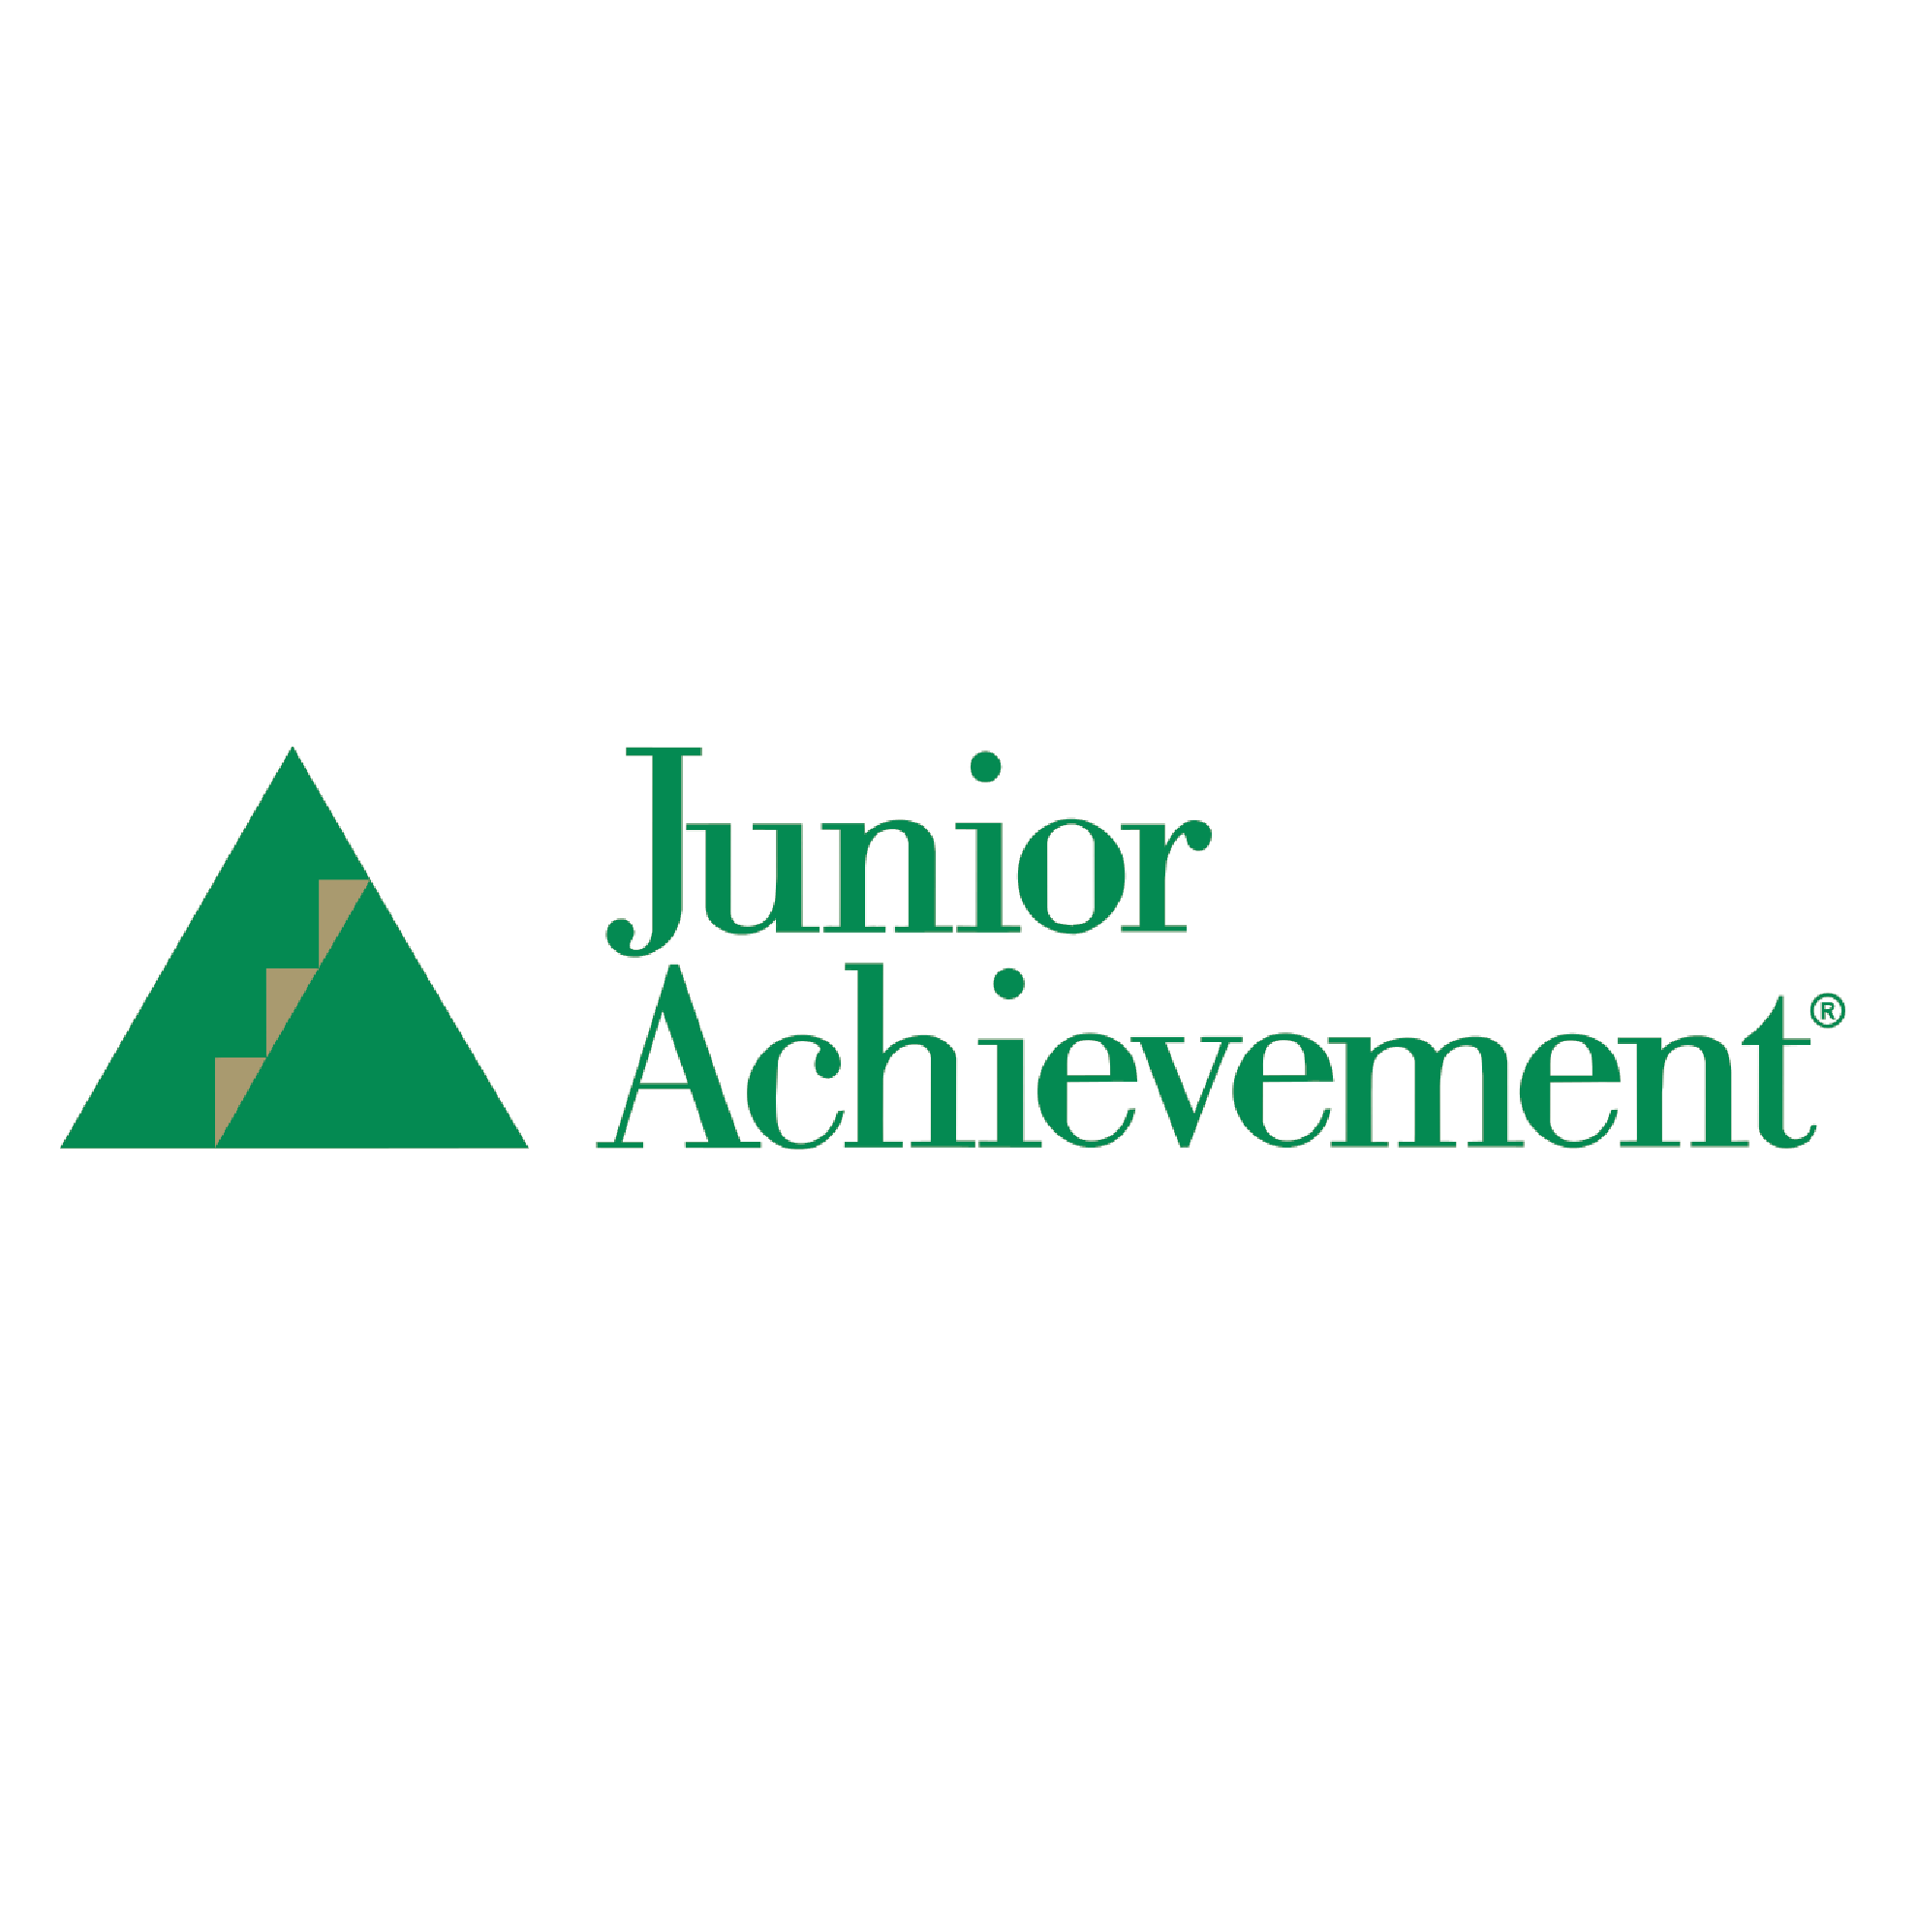 Junior Achievement e1631639046947